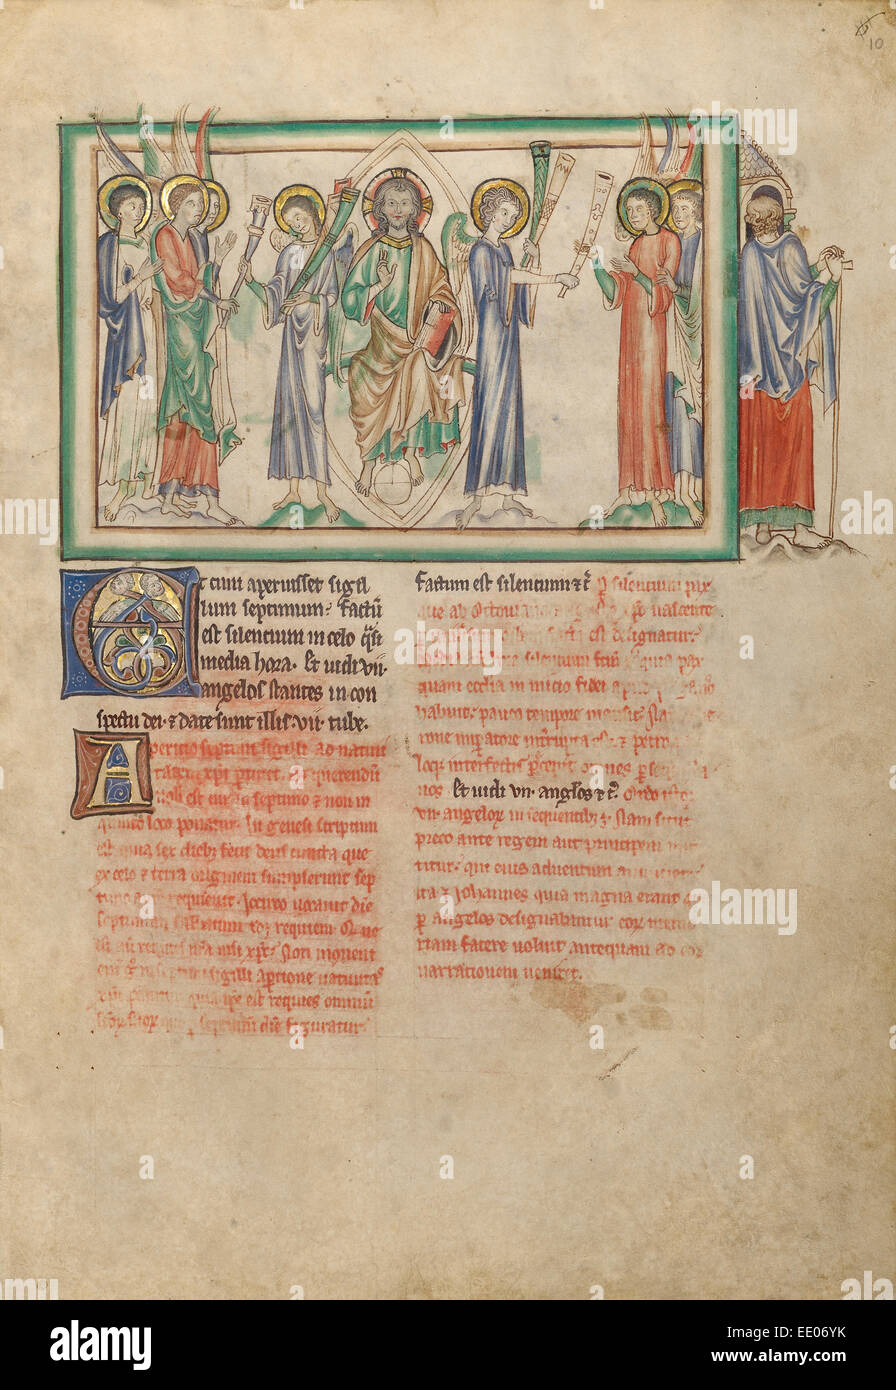 L'apertura del settimo sigillo: la distribuzione di trombe; sconosciuta; Londra (probabilmente), l'Inghilterra, l'Europa; circa 1255 - 1260 Foto Stock